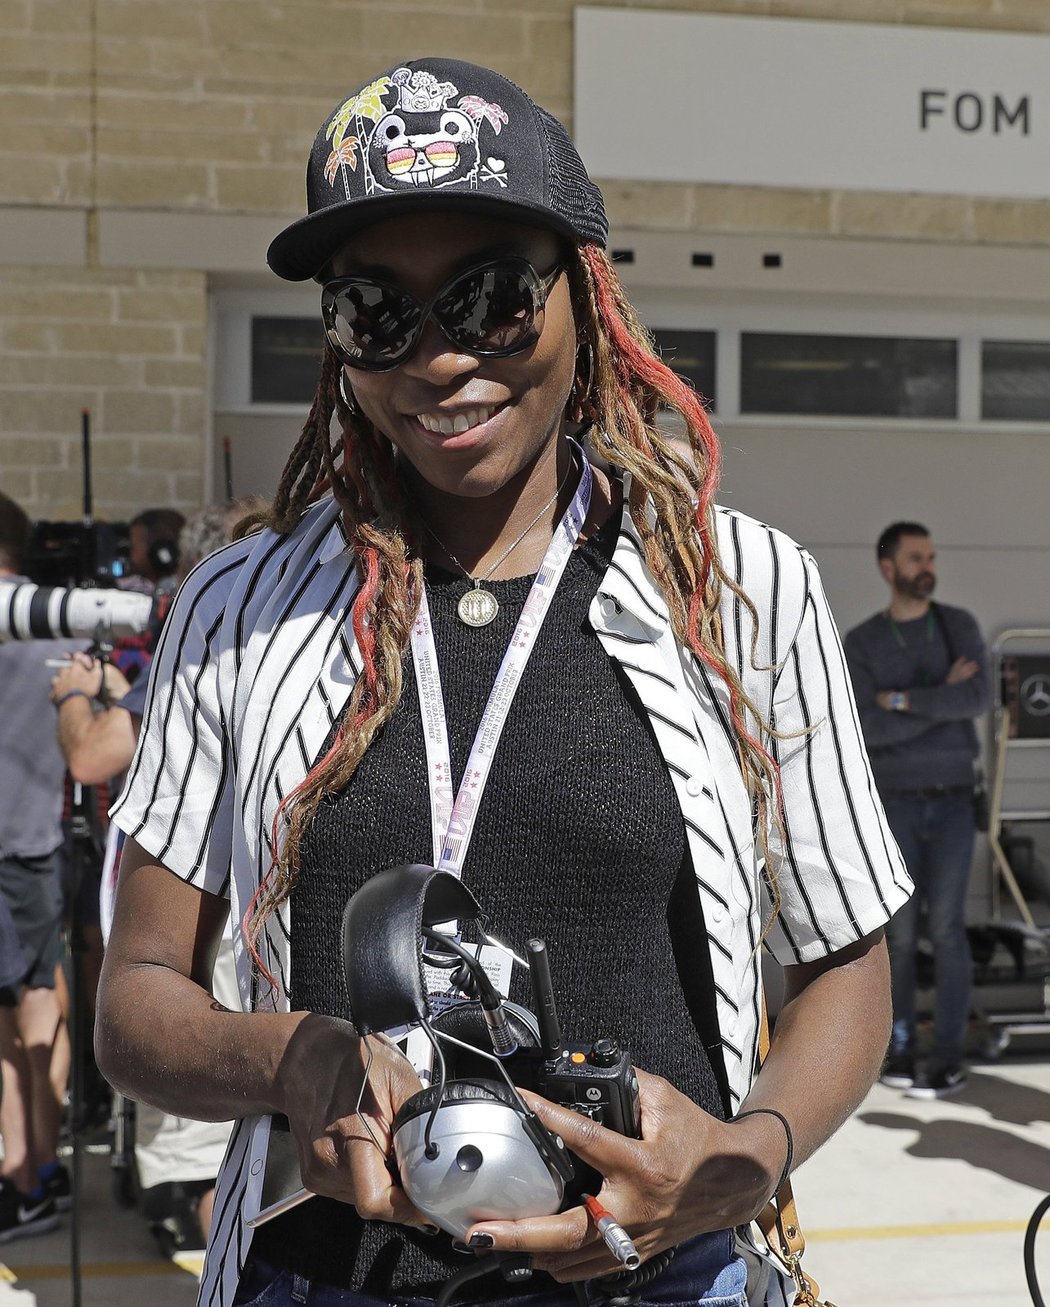 Tenistka Venus Williamsová navštívila Velkou cenu USA F1.